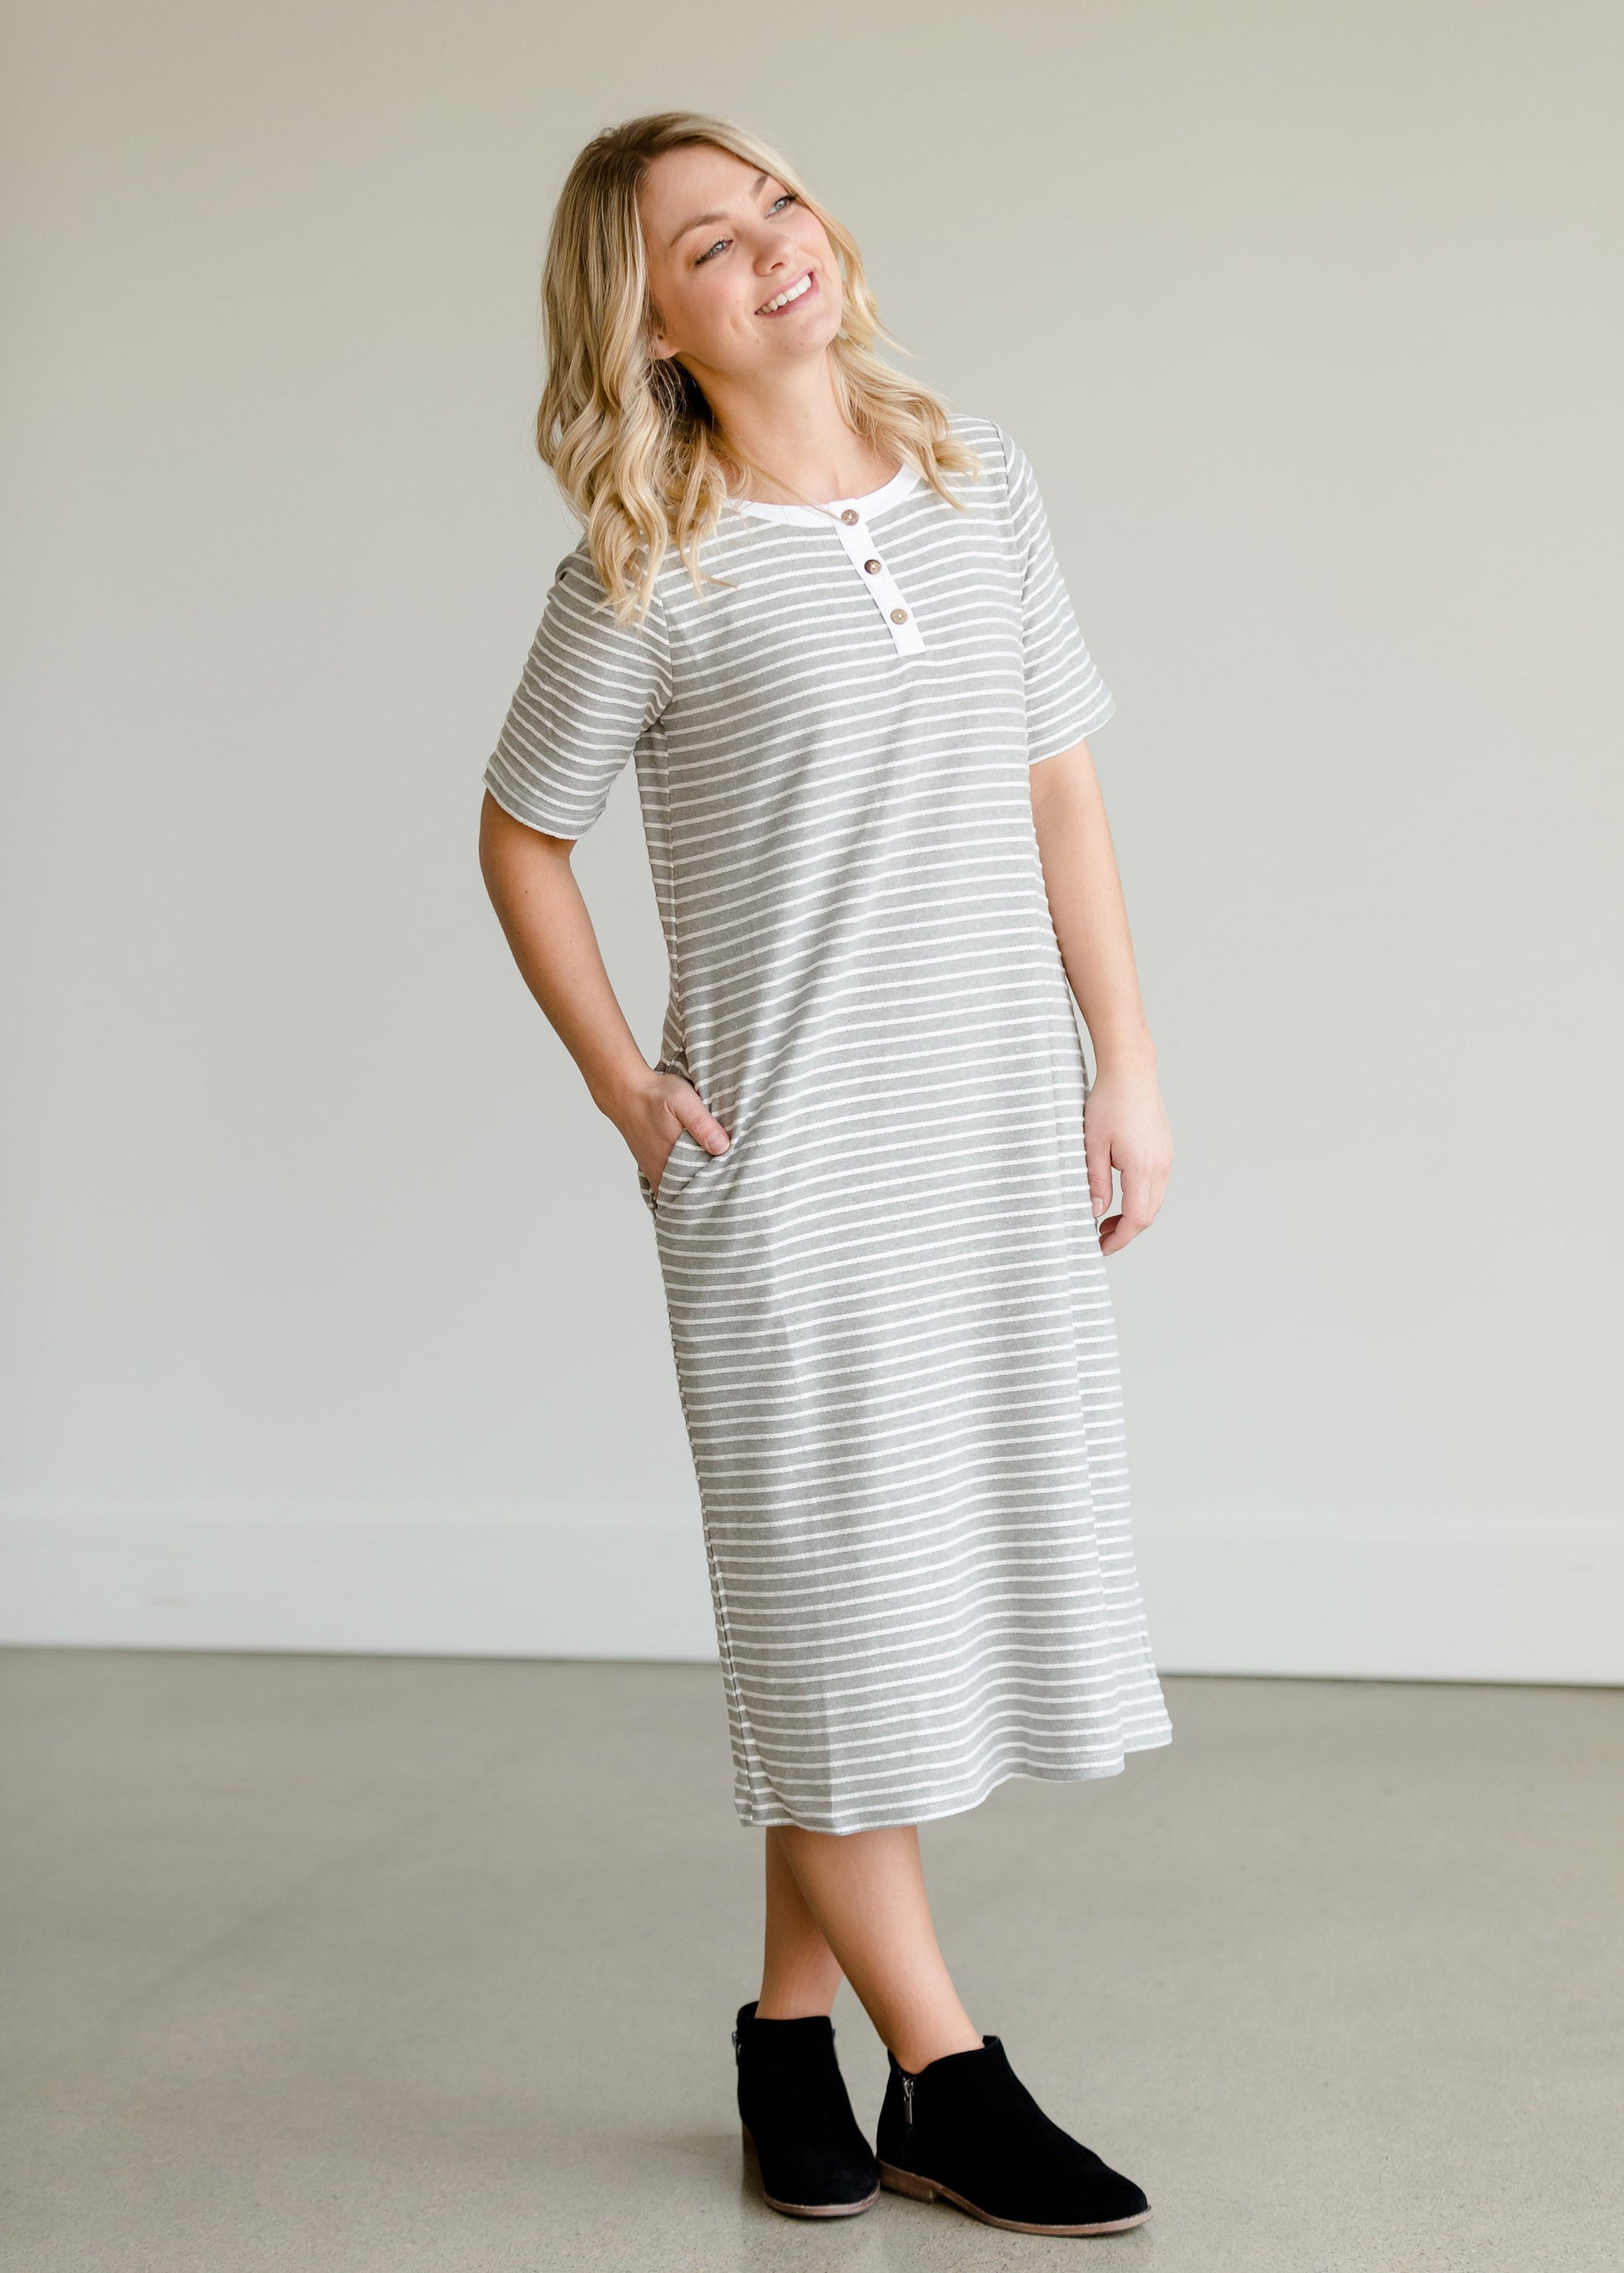 Gray Striped Textured Midi Dress - FINAL SALE Dresses